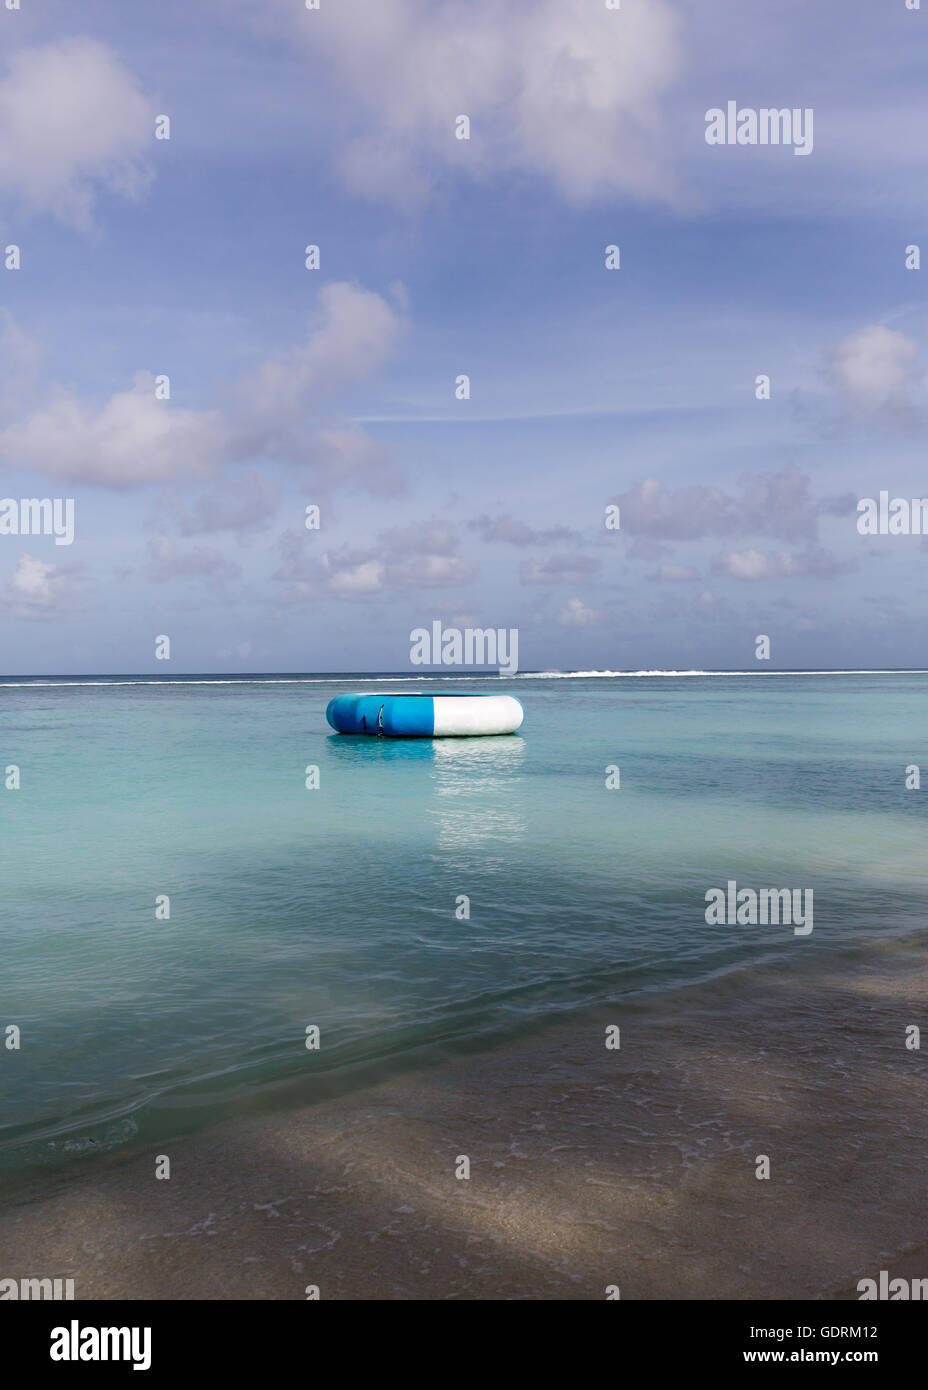 Hulhulmale, Maldives. Stock Photo